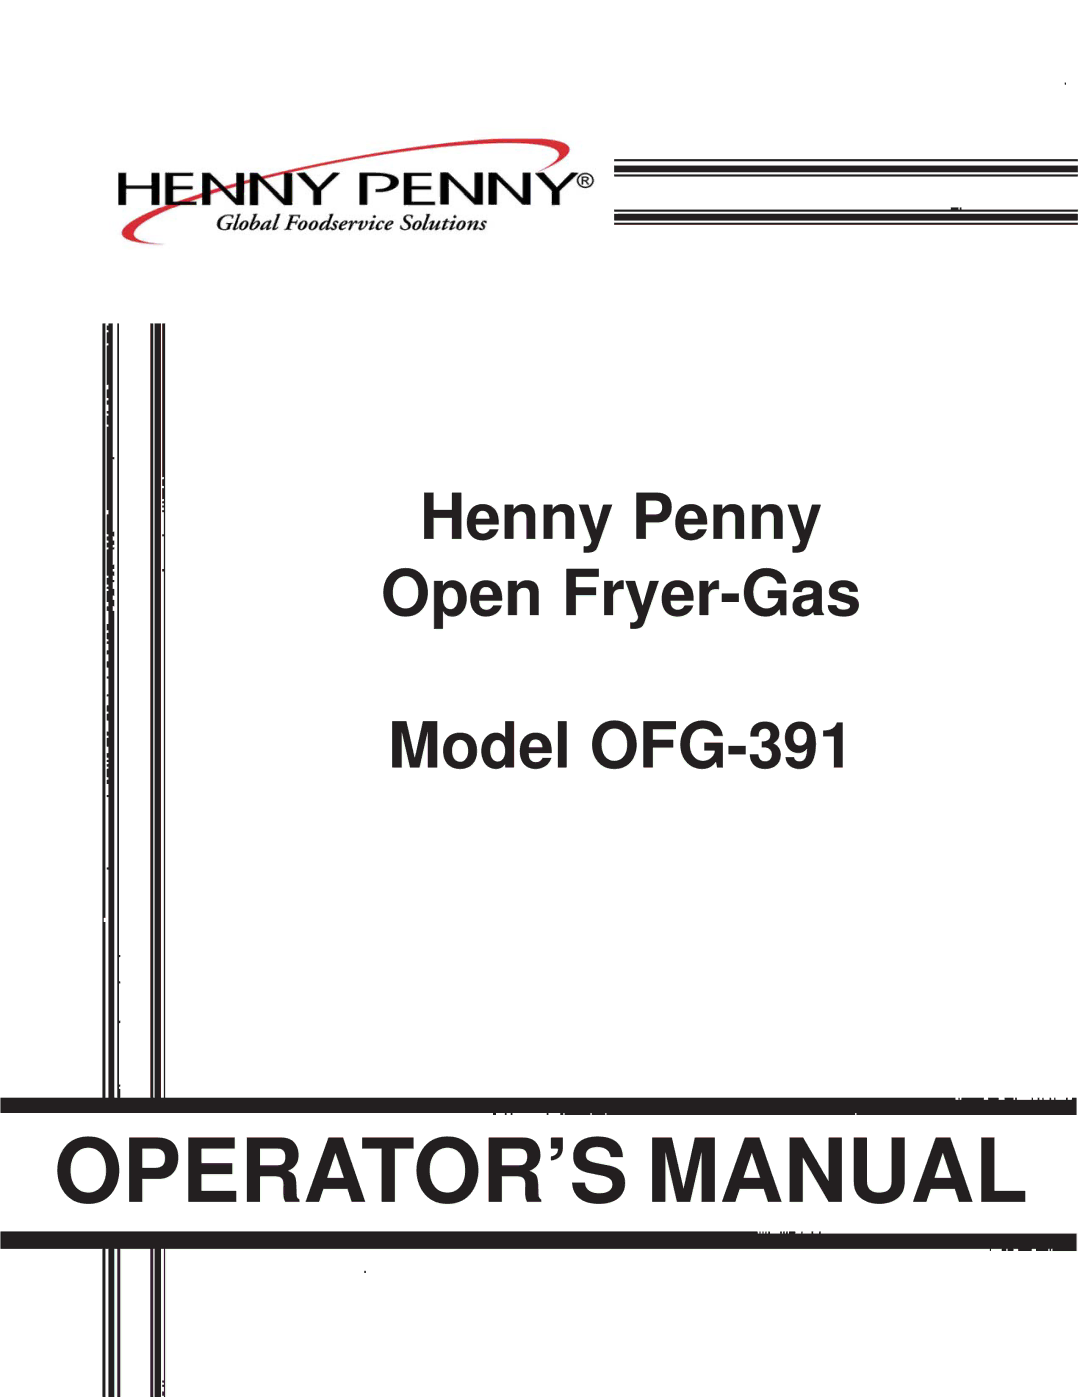 Henny Penny OFG-391 manual OPERATOR’S Manual 